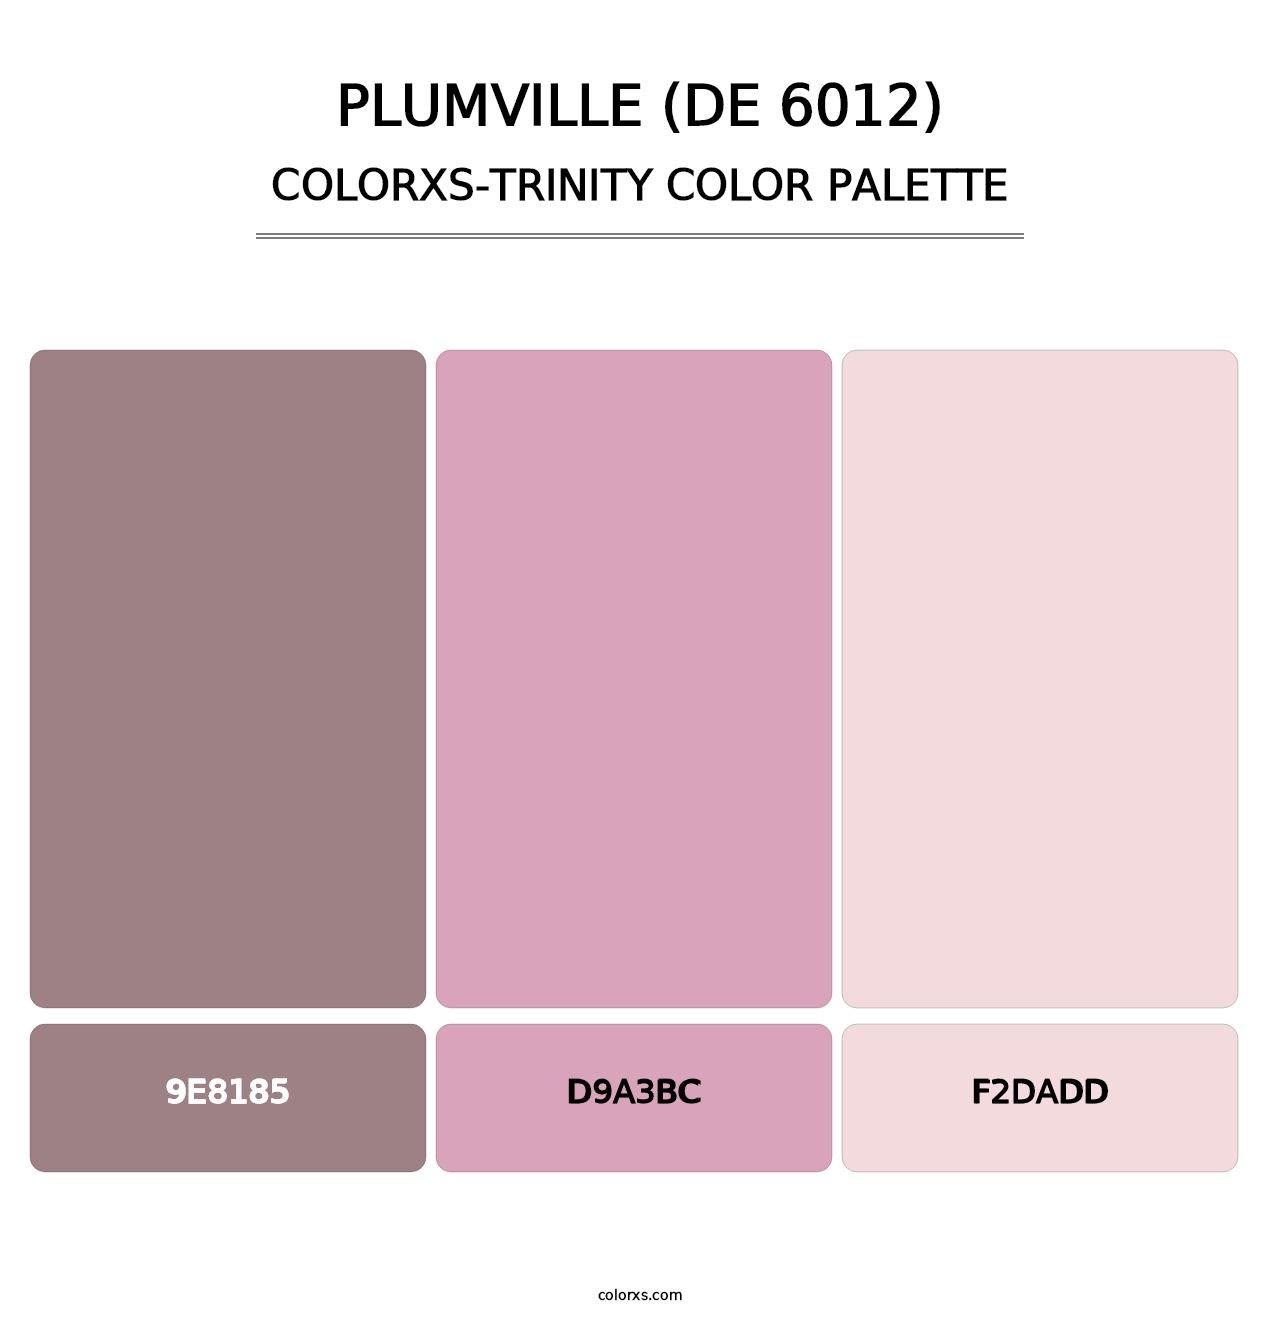 Plumville (DE 6012) - Colorxs Trinity Palette